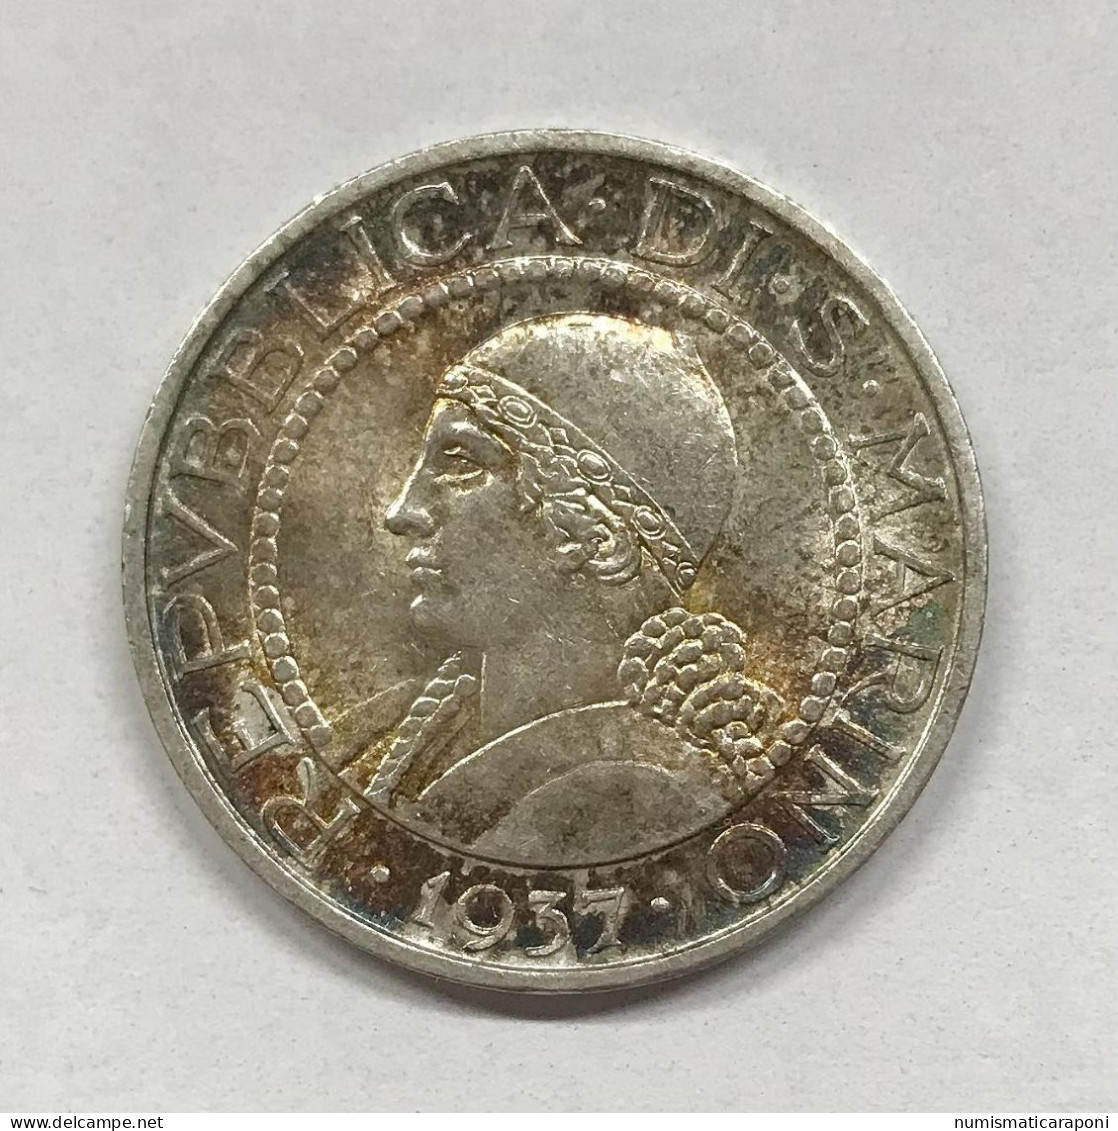 San Marino Vecchia Monetazione 1864-1938 5 Lire 1937 Gig.23 Fdc Bellissima Patina E.1306 - San Marino